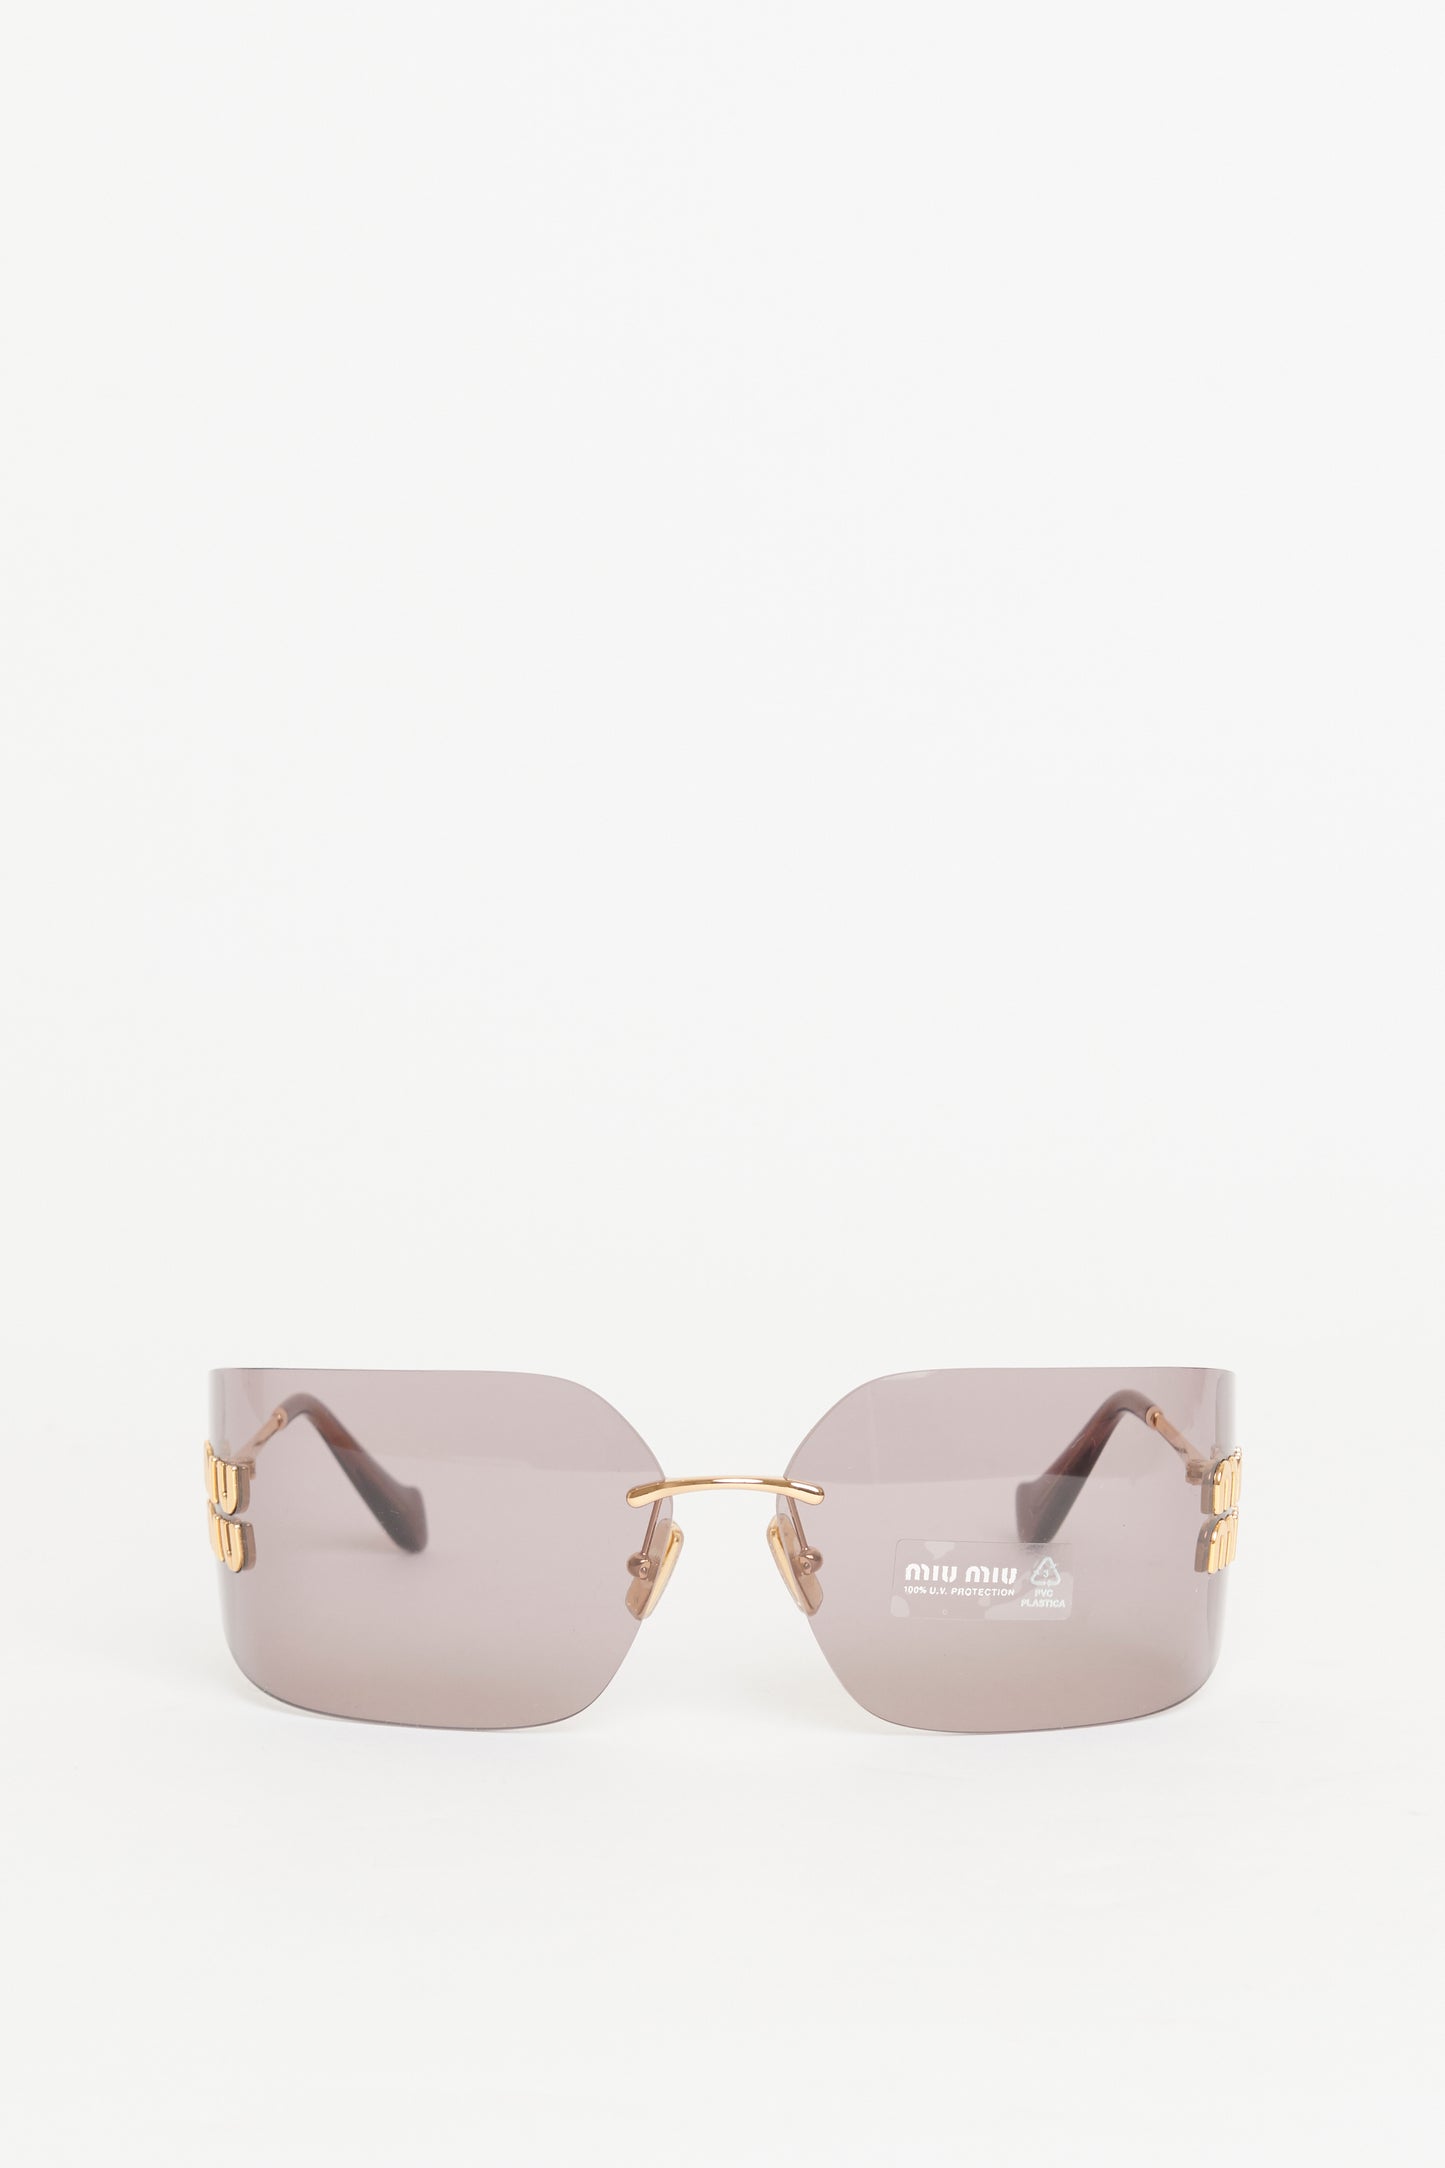 Gold Tone Metal Preowned Runway Sunglasses